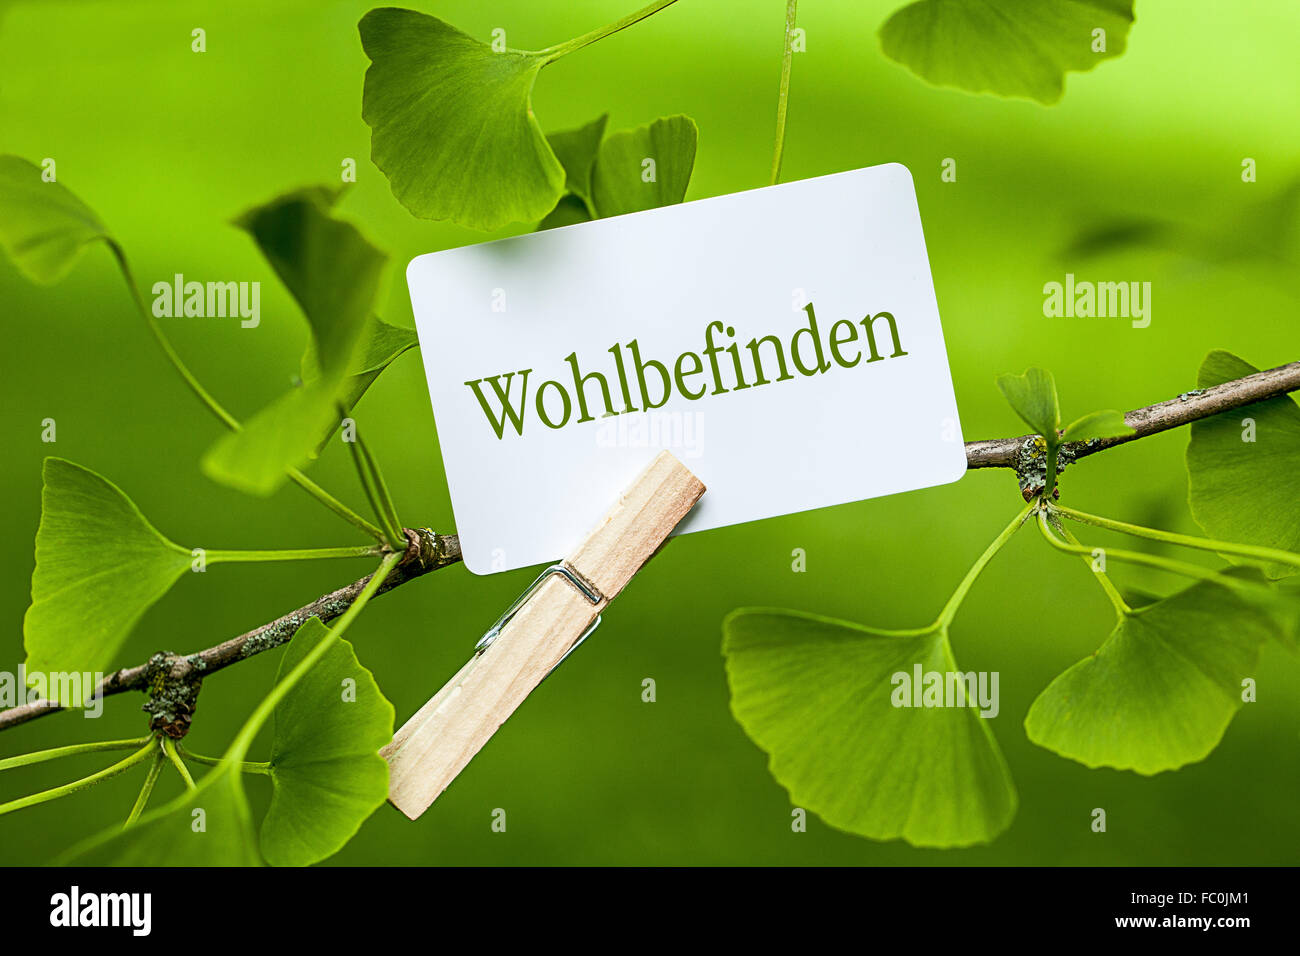 La palabra "Wohlbefinden" en un árbol de ginkgo Foto de stock